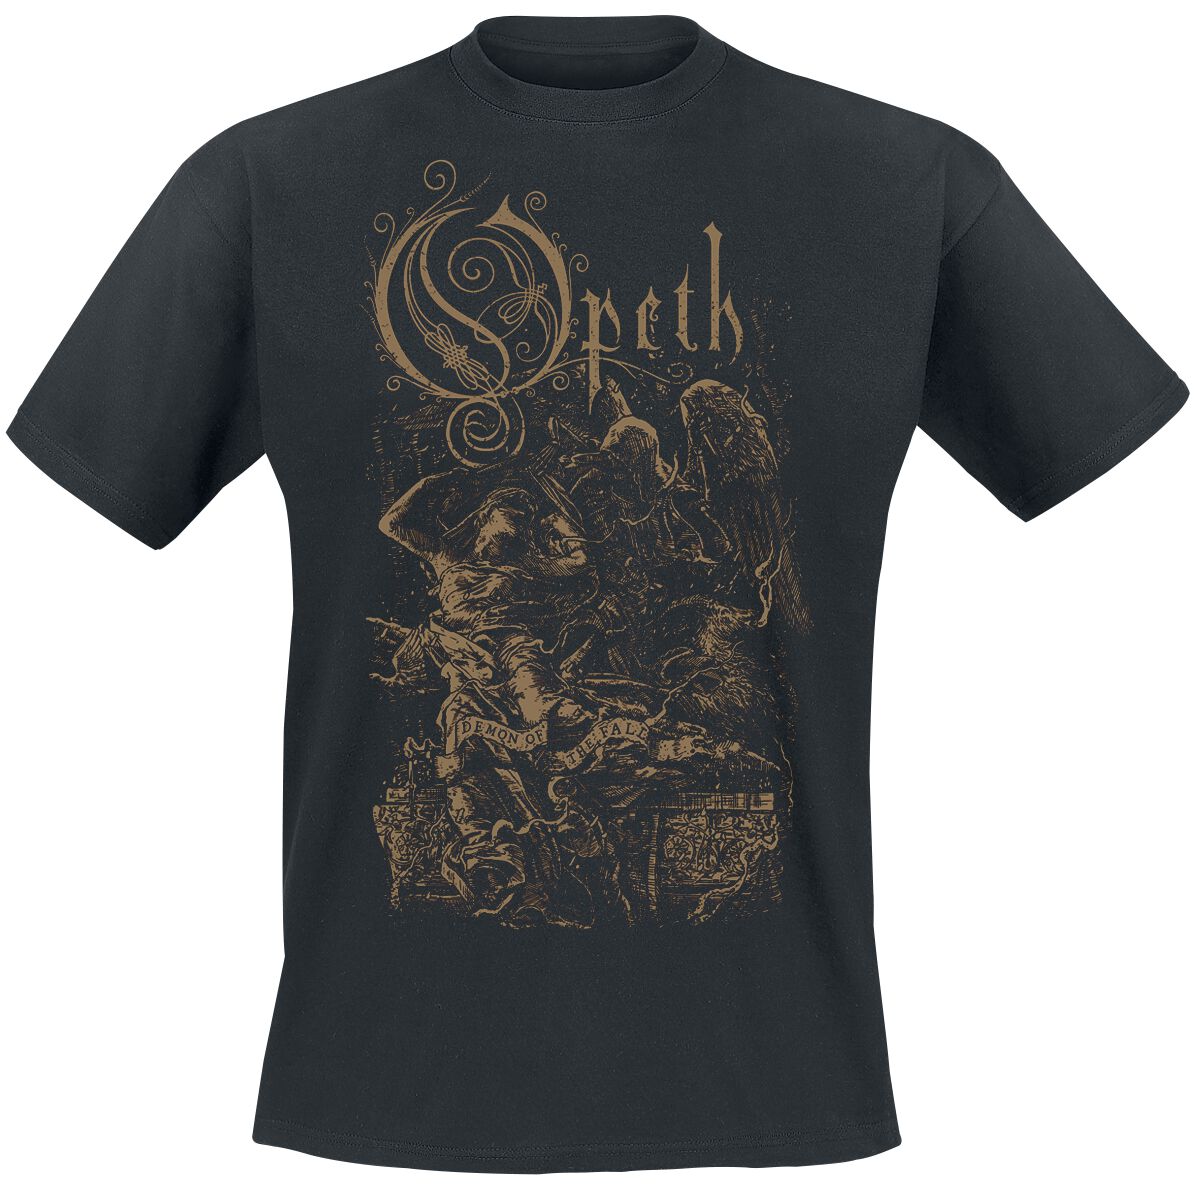 Opeth T-Shirt - Demon Of The Fall - S bis XXL - für Männer - Größe S - schwarz  - Lizenziertes Merchandise!